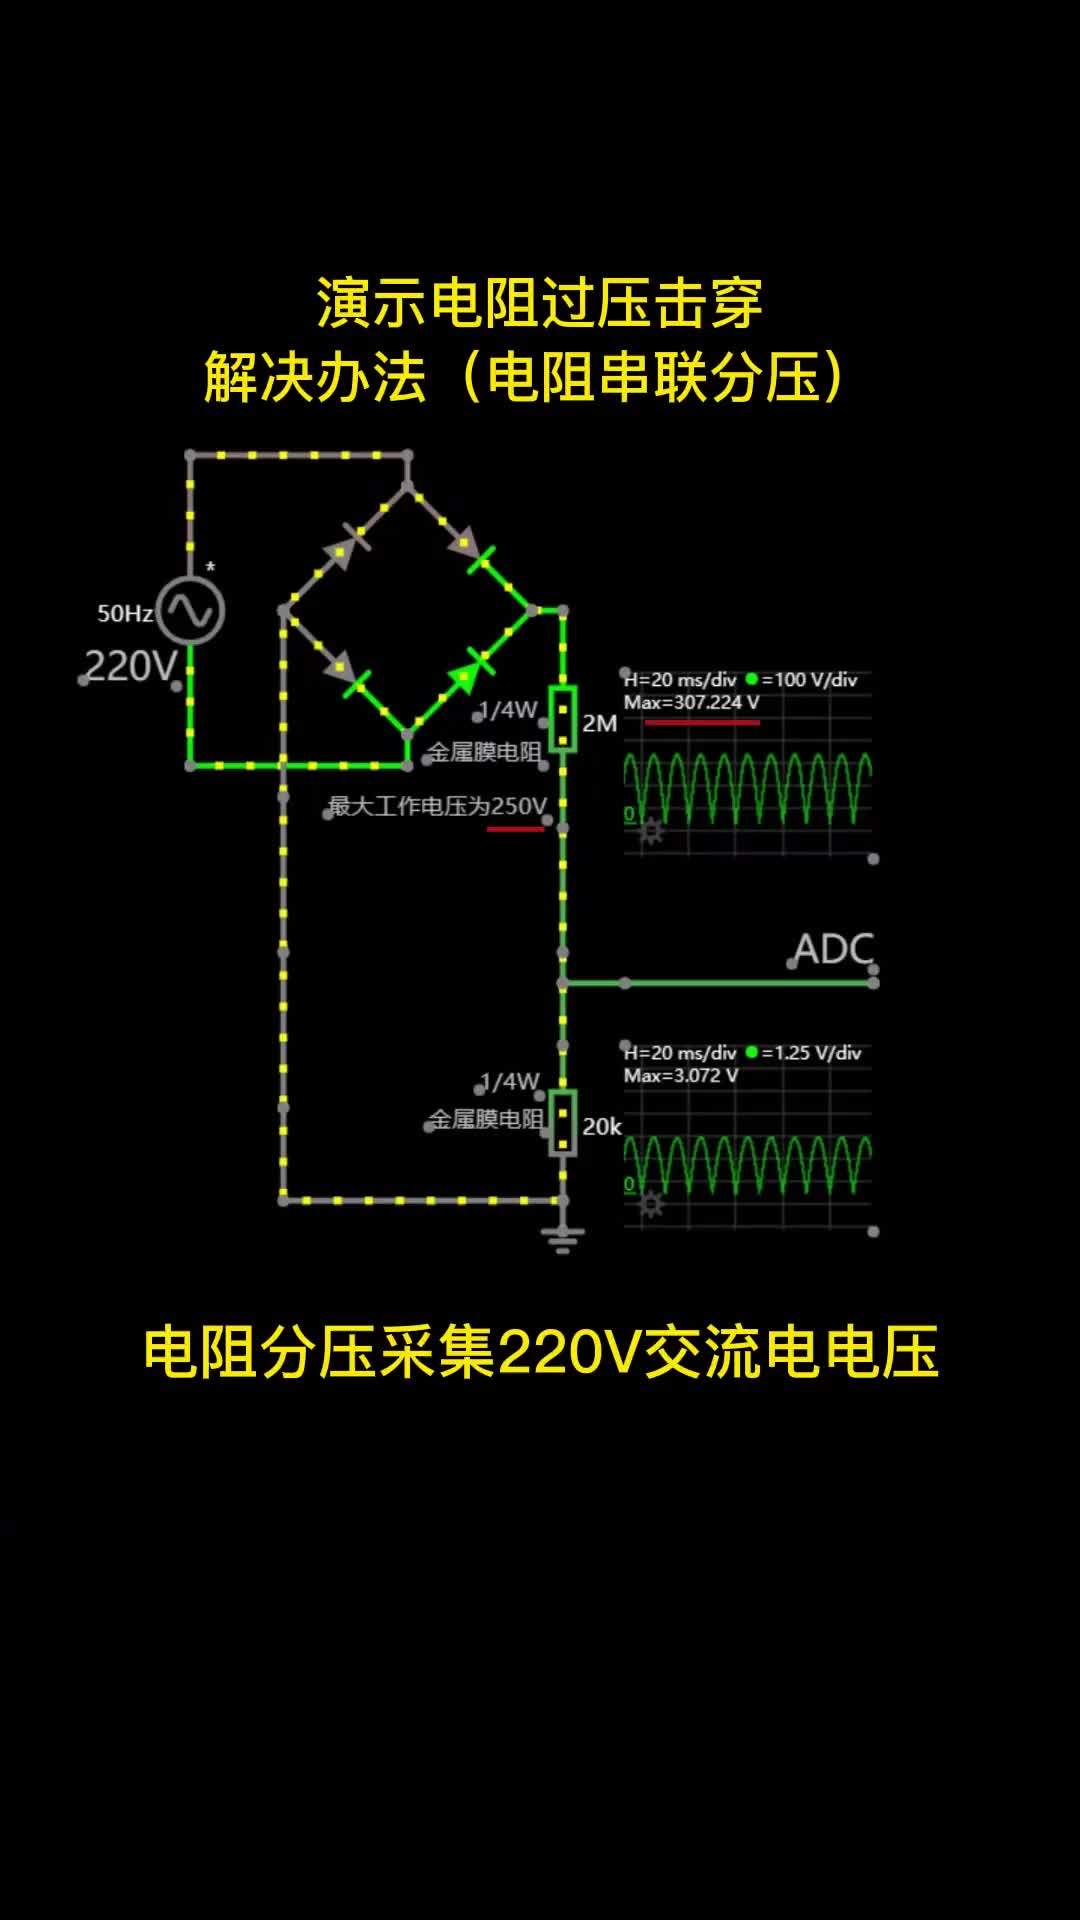 00019 演示220V交流电压采集，用电阻串联提高耐压值。电子森林 #单片机开发 #电路设计 #电阻 